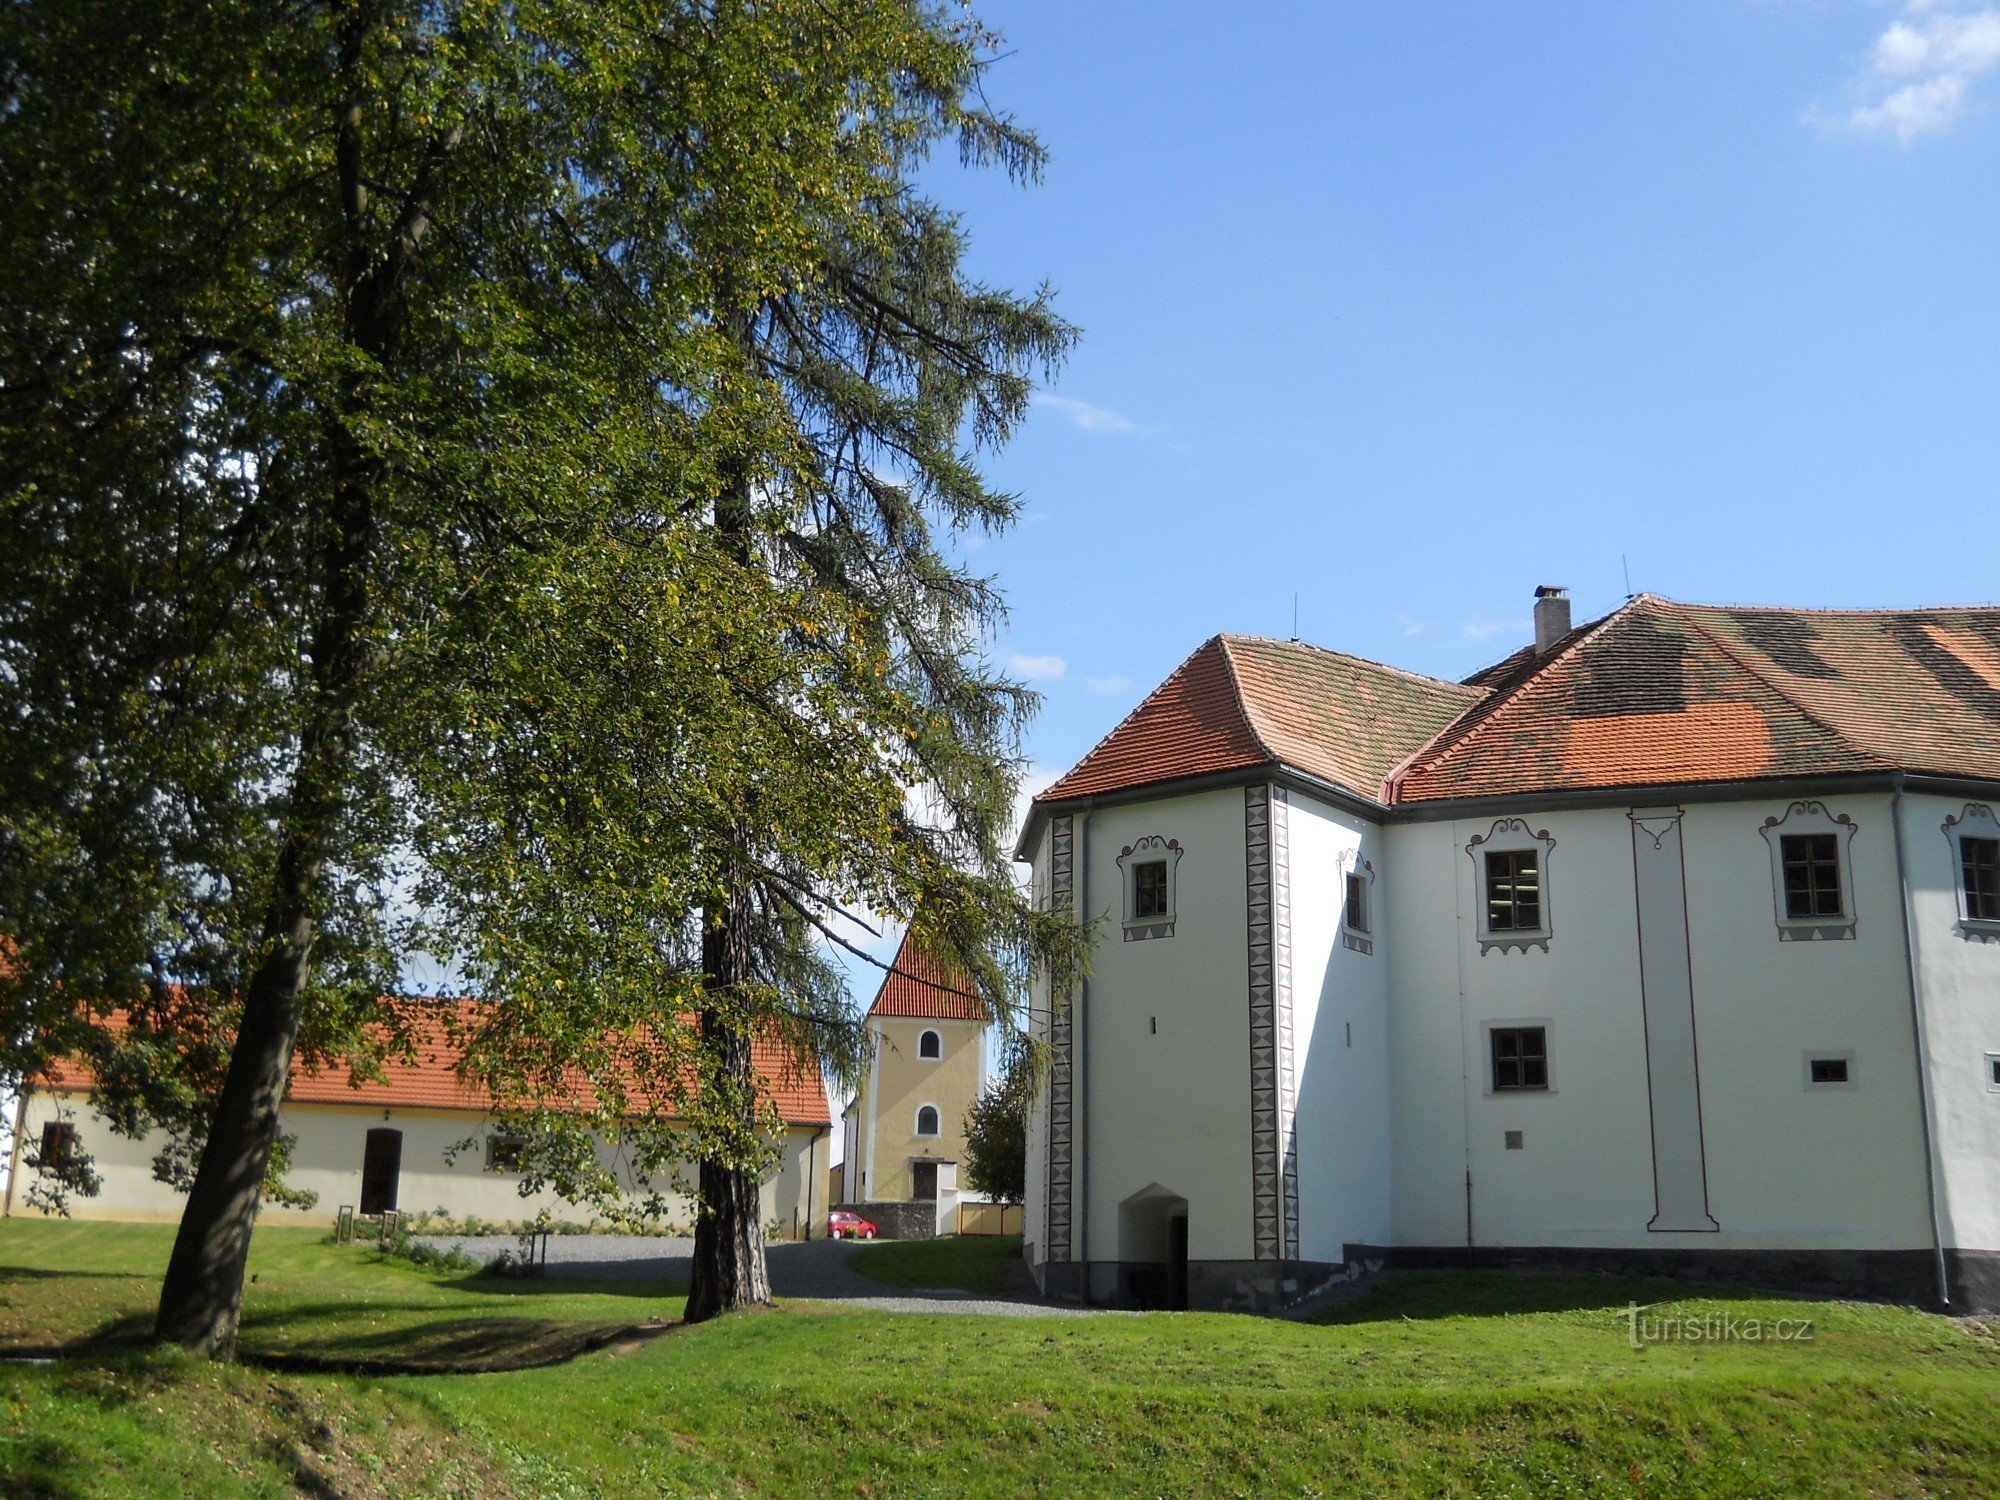 Lâu đài Chanovice